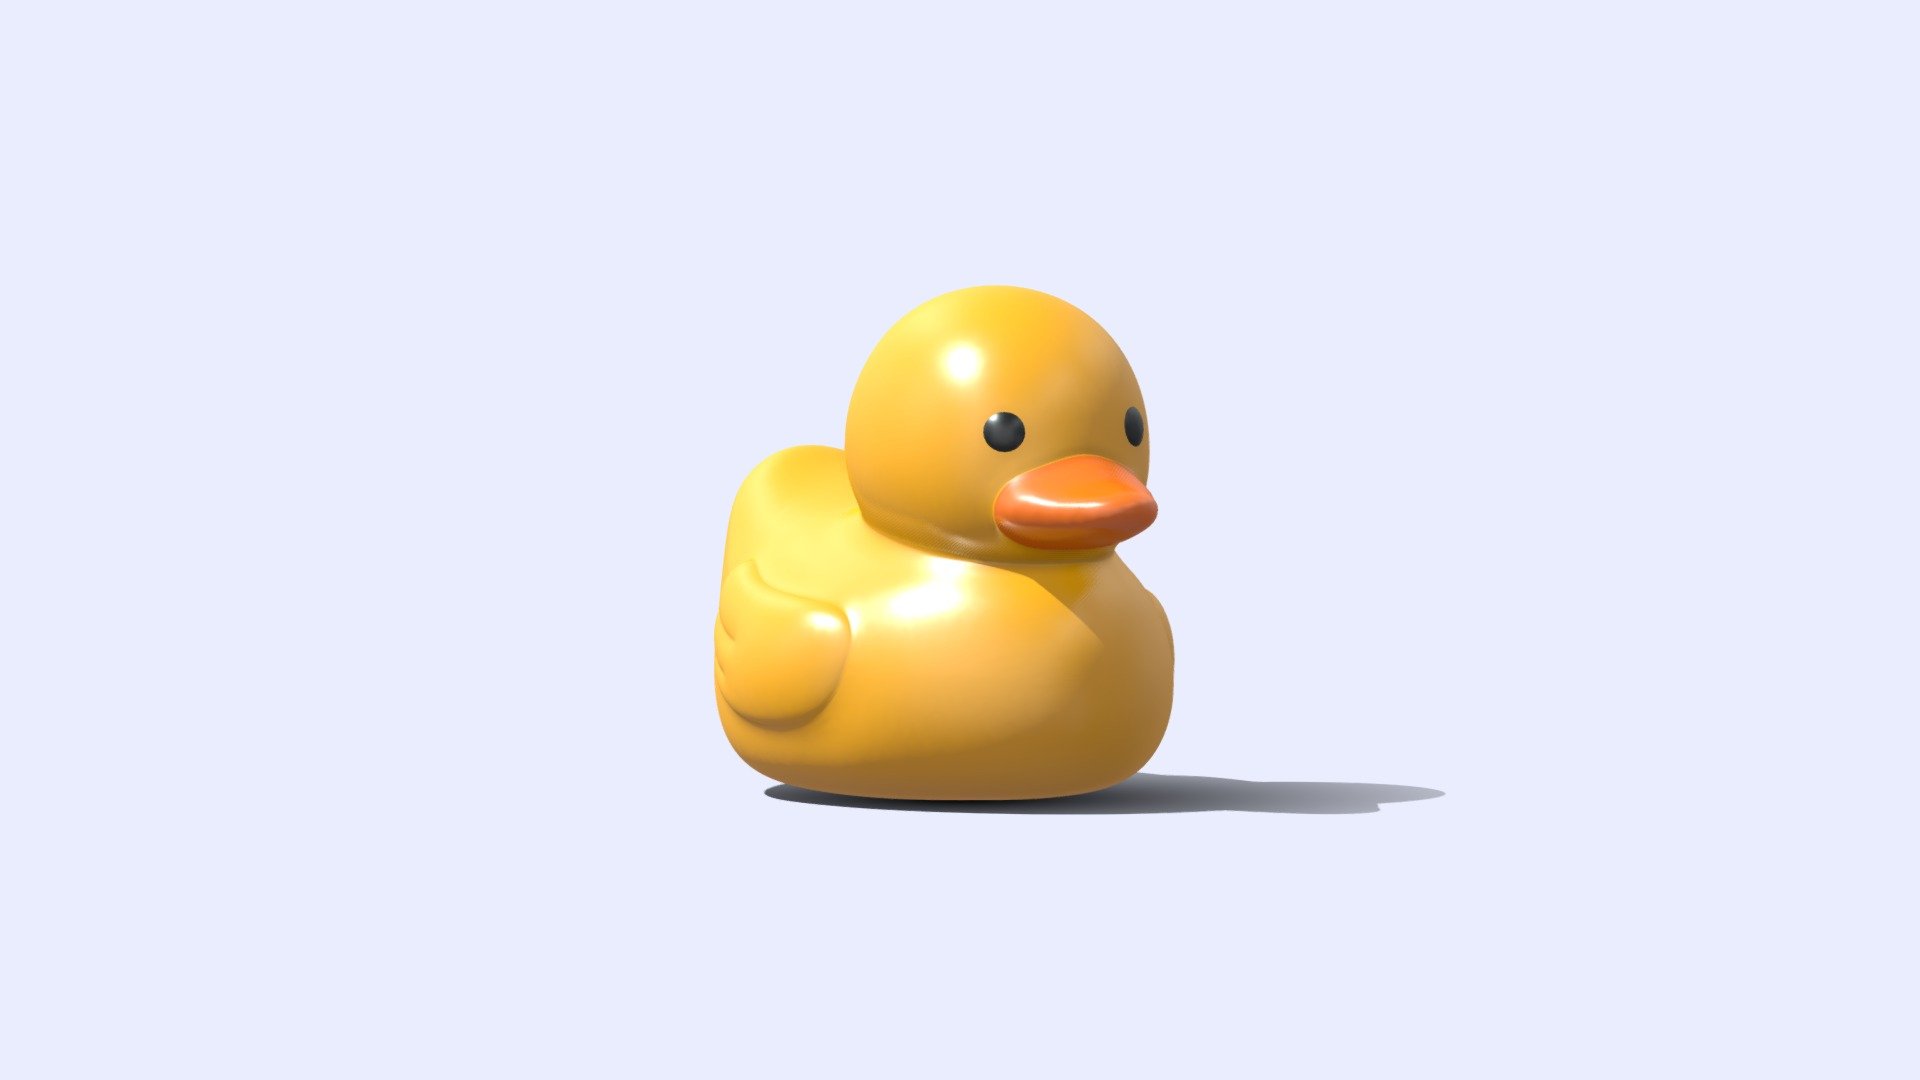 Isn't he a very cute duckling? - Rubber Duck - 3D model by VFVince 3d model